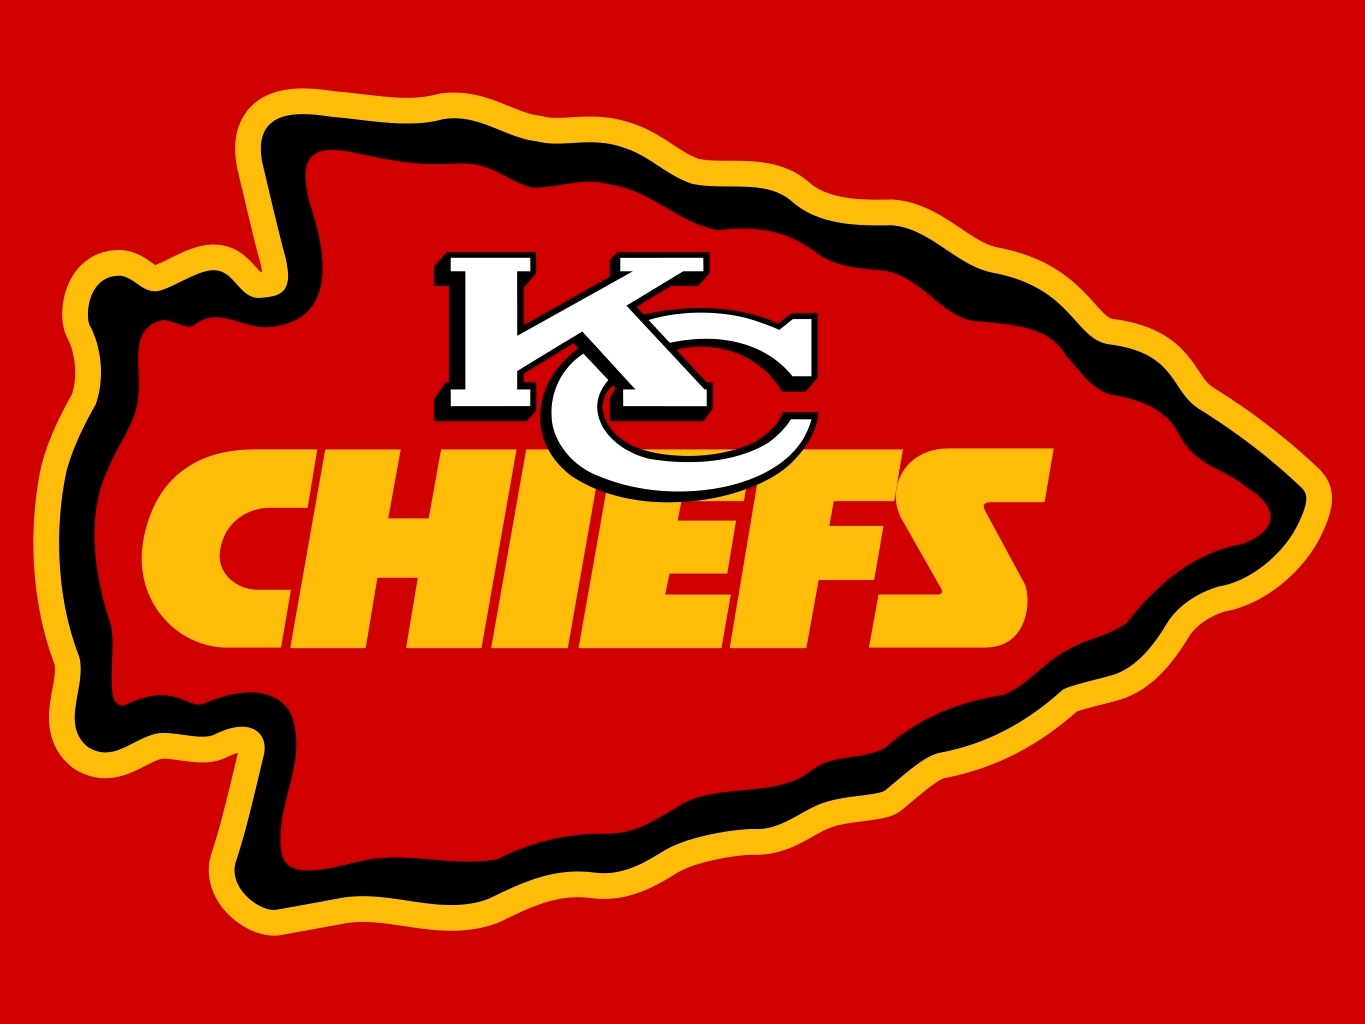 Kansas City Chiefs Backgrounds On Wallpapers Vista - Red Kc Chiefs Logo - 1365x1024 Wallpaper